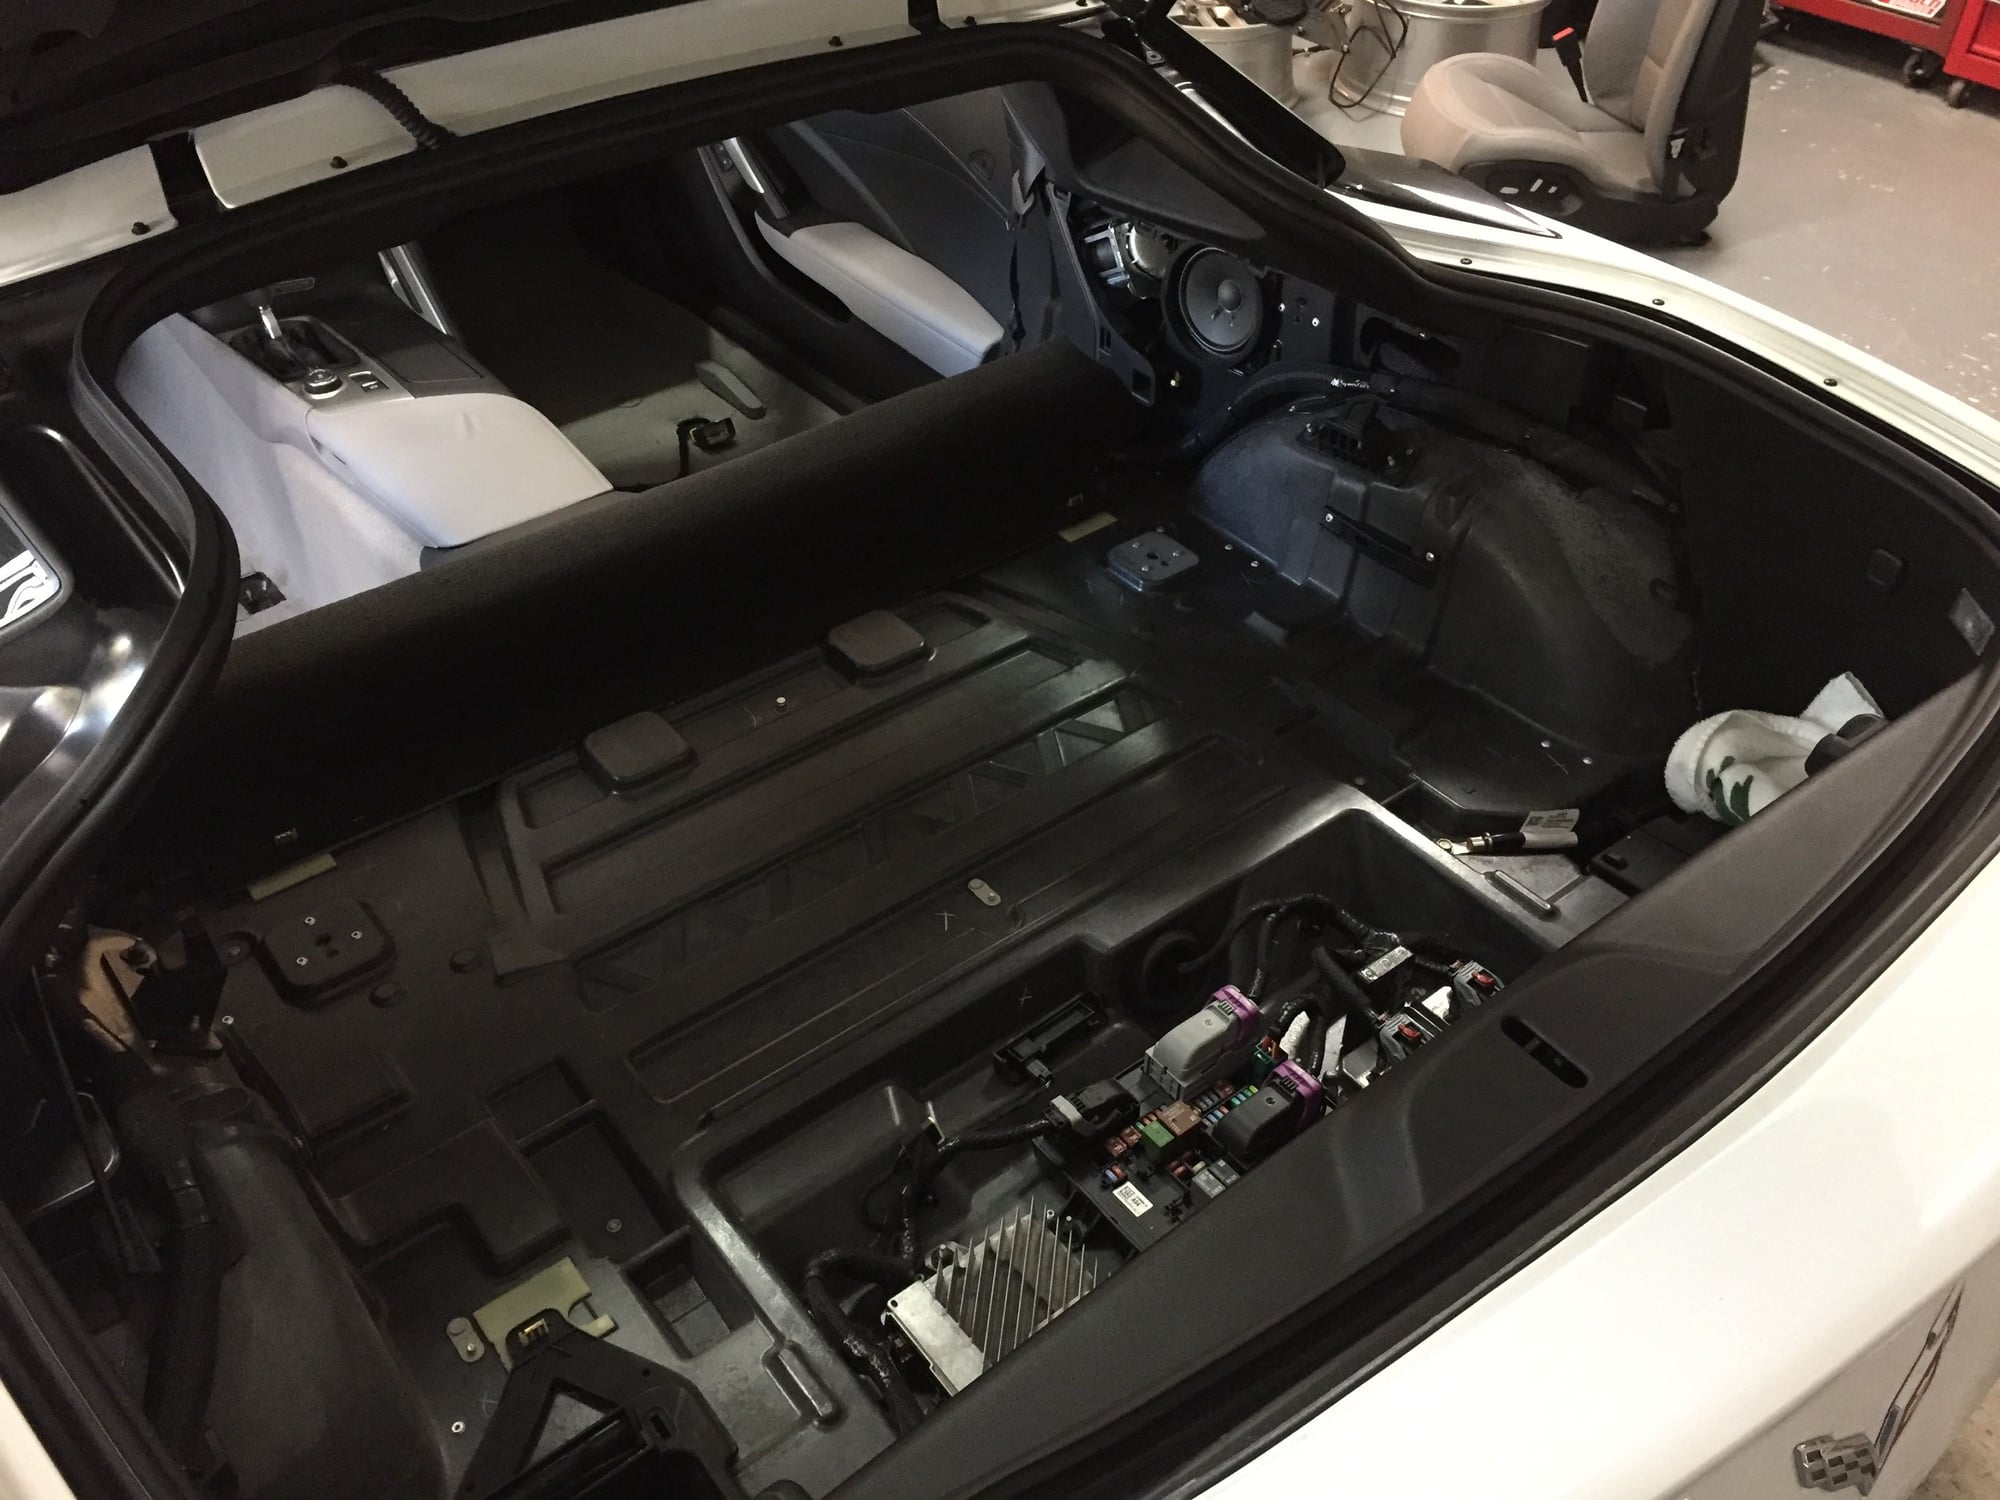 Best tools/method for removing interior trim panels? - CorvetteForum